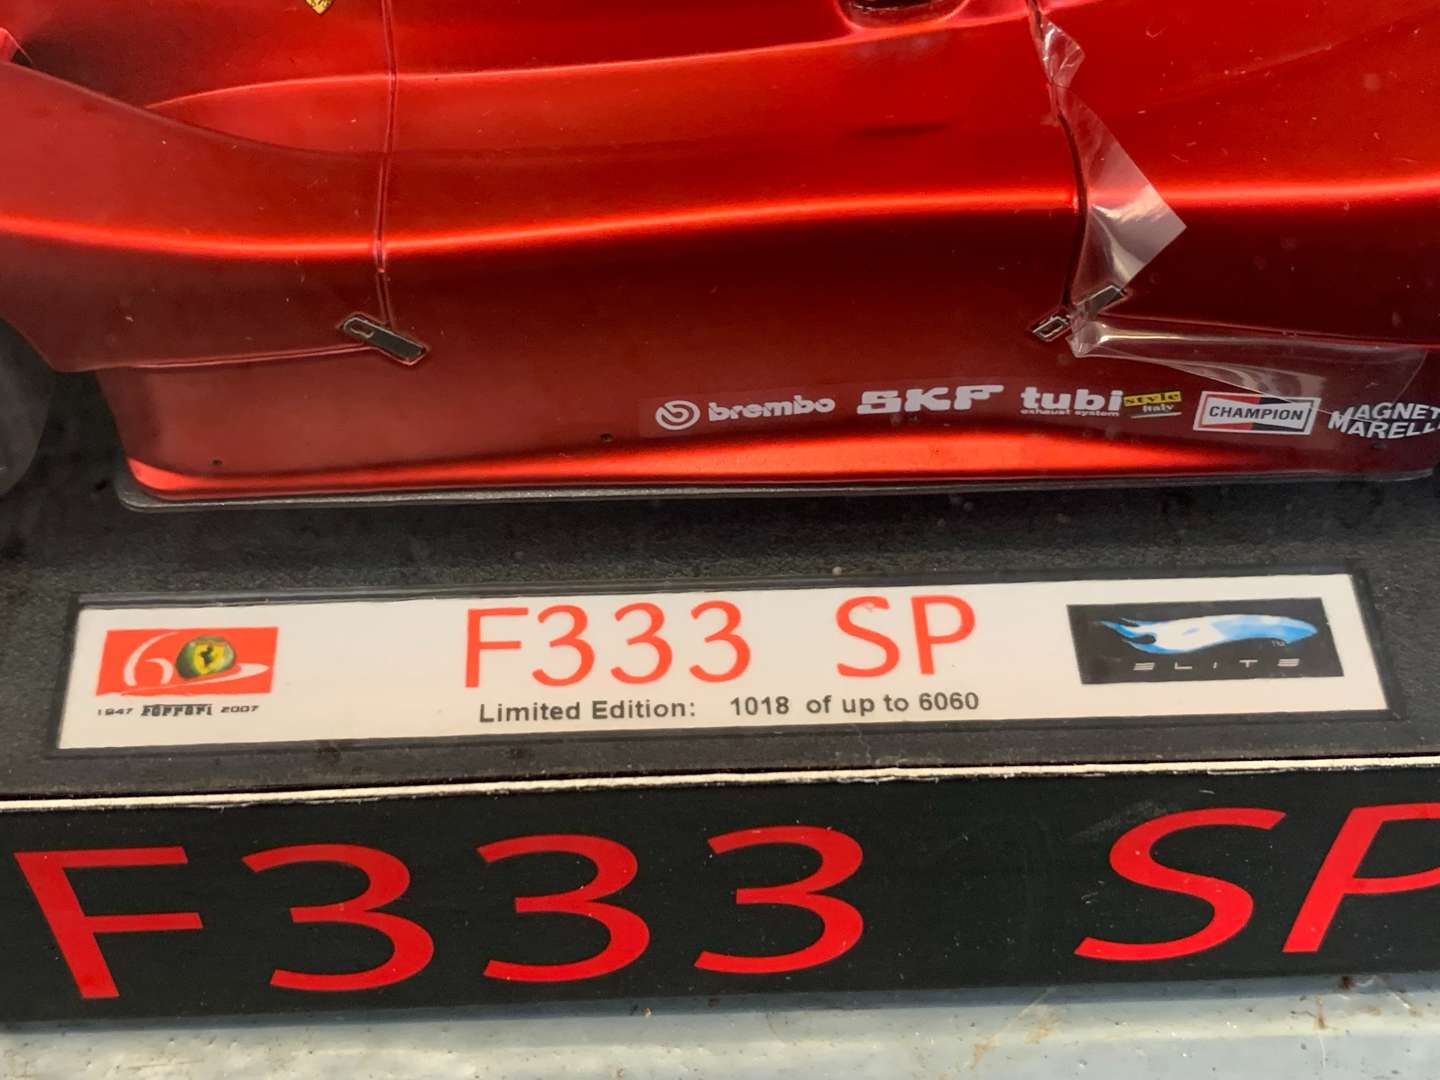 <p>Elite 1:18 Scale Boxed Ferrari F333 SP Car</p>